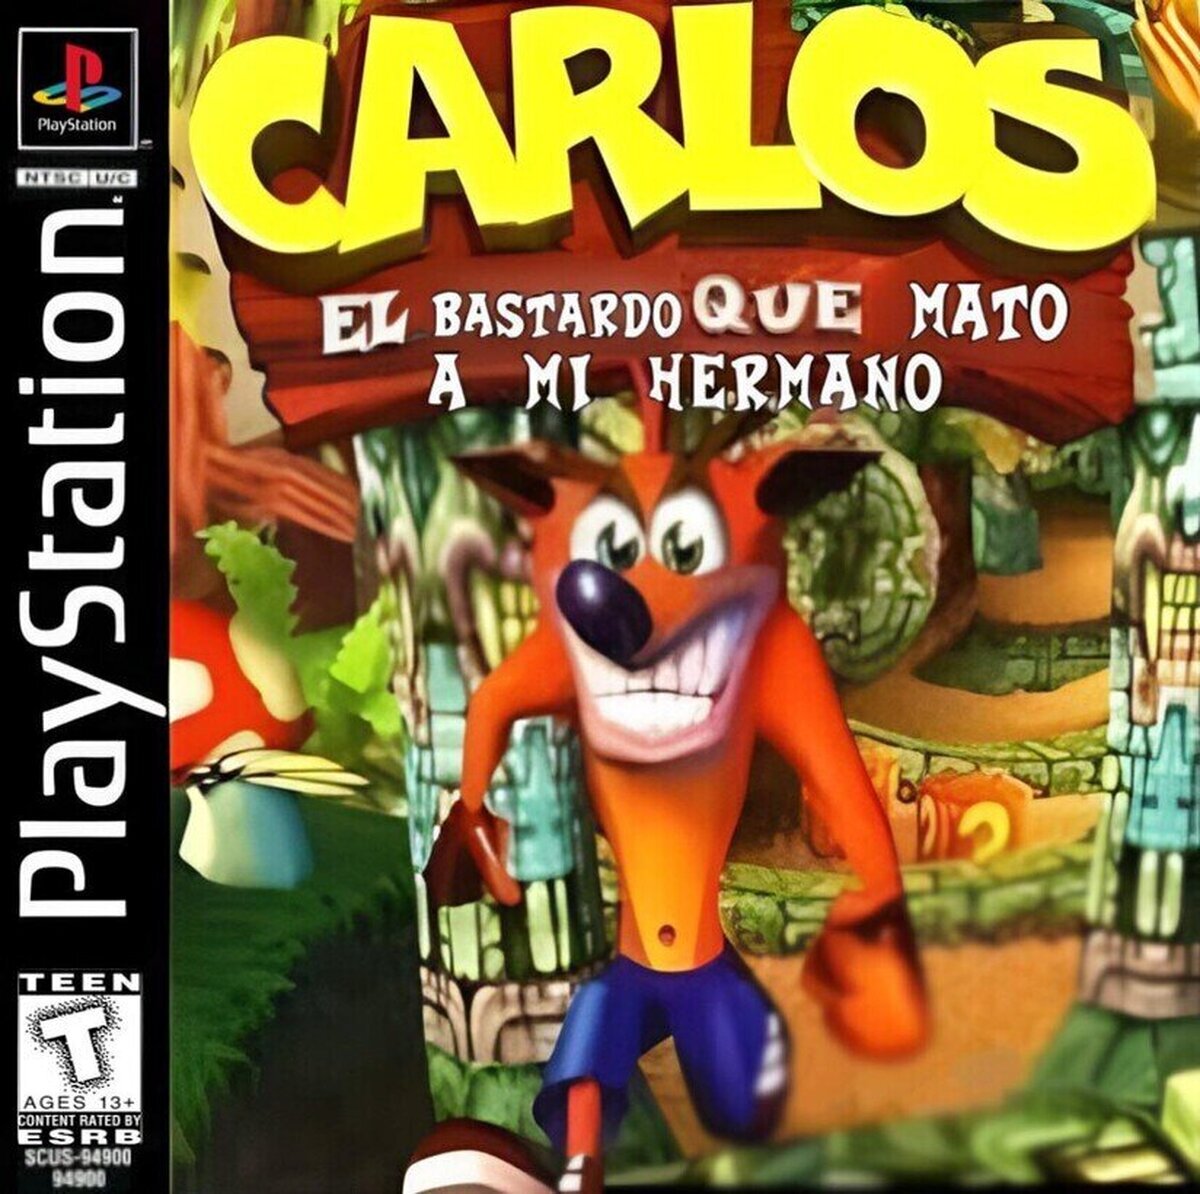 Un recordatorio a Carlos